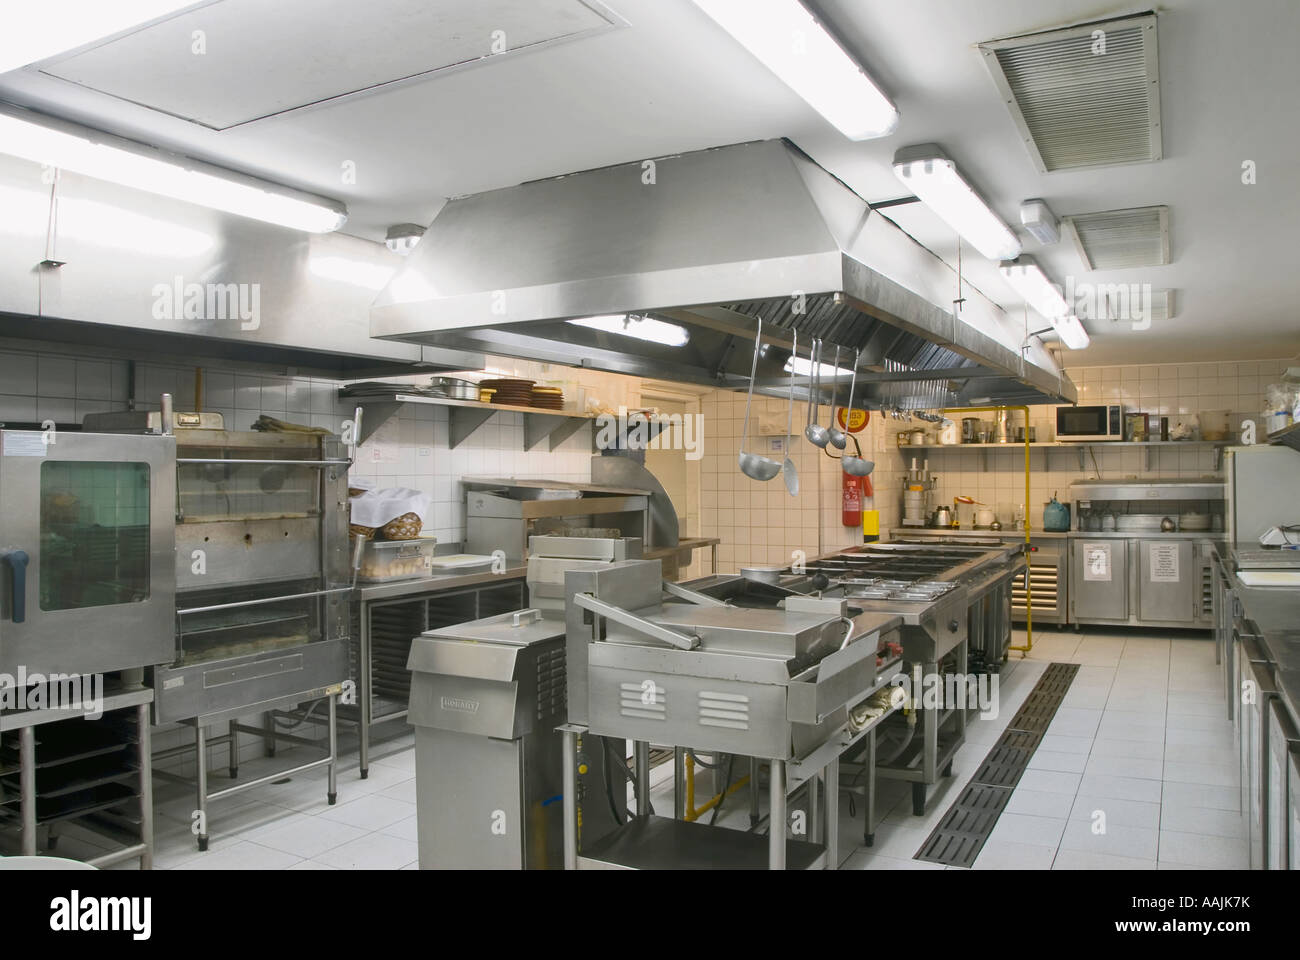 restaurant kitchen , industrial kitchen Stock Photo - Alamy